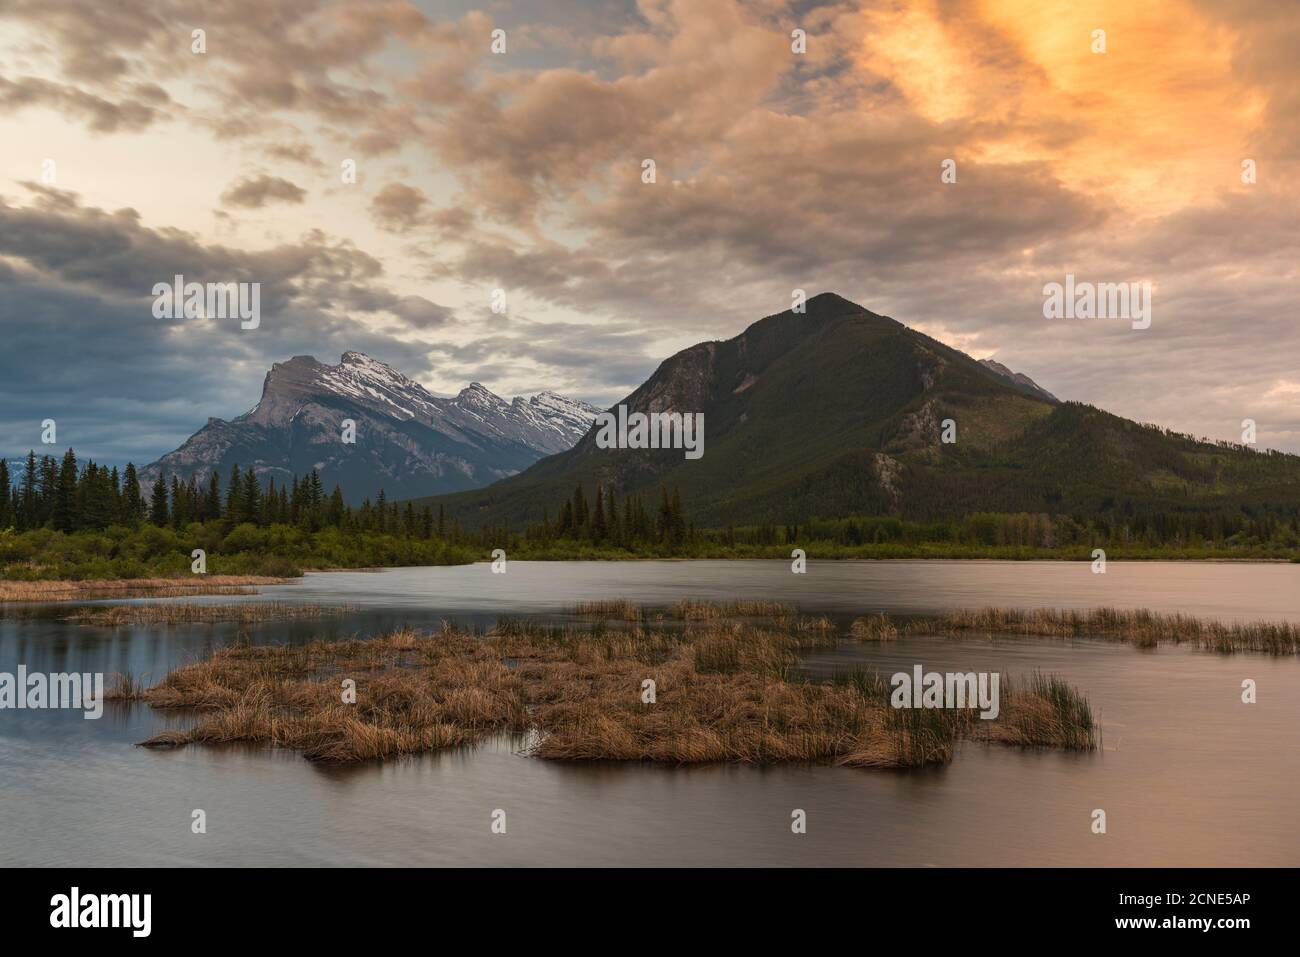 Lever du soleil à Vermillion Lakes avec Mount Rundle, parc national Banff, site du patrimoine mondial de l'UNESCO, Alberta, Rocheuses canadiennes, Canada Banque D'Images